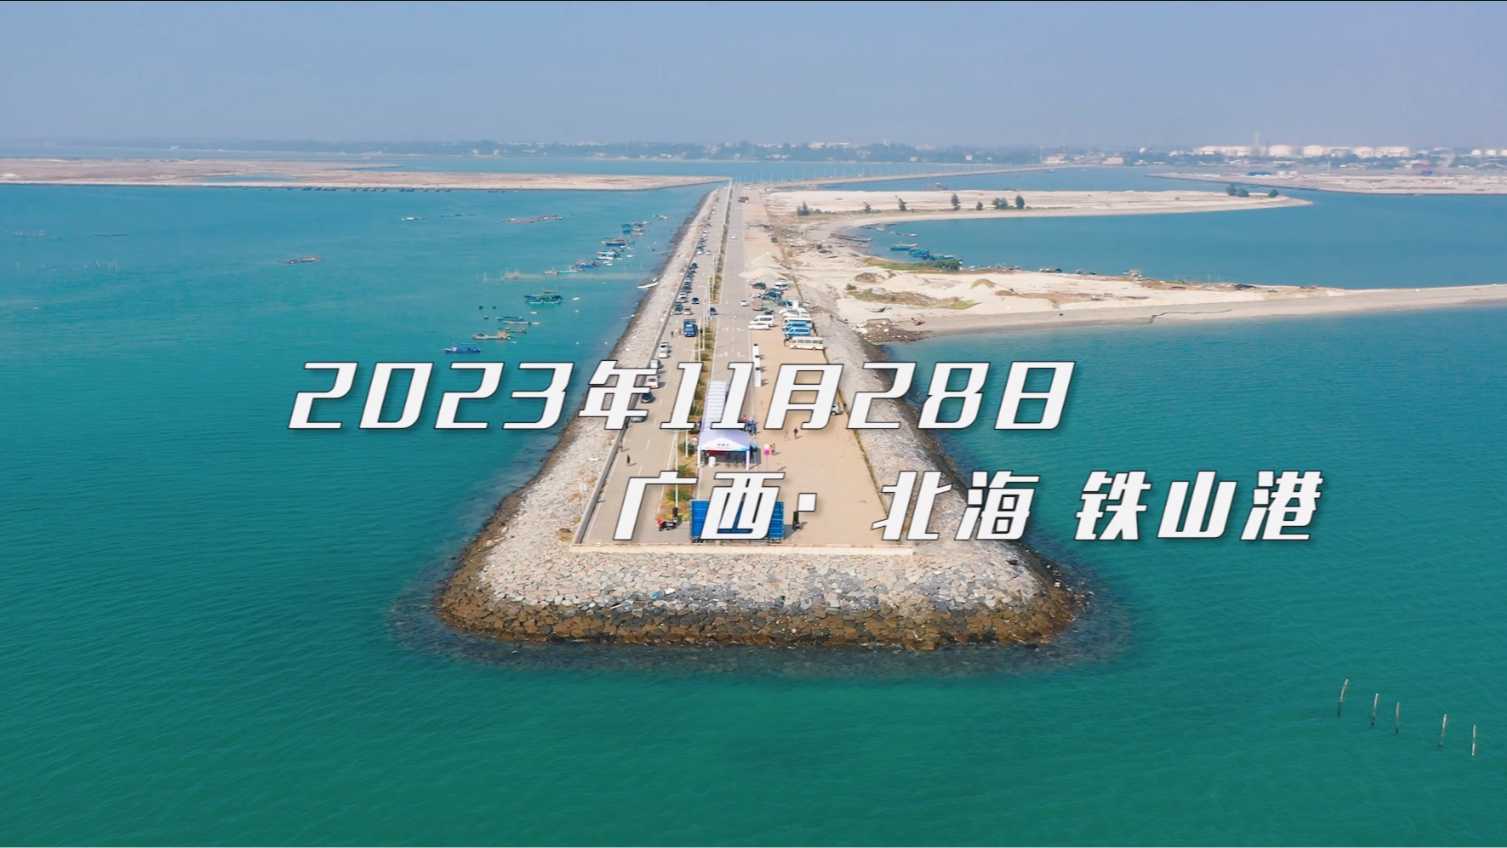 2023年广西北部湾近岸海域突发环境事件应急监测联合演练花絮